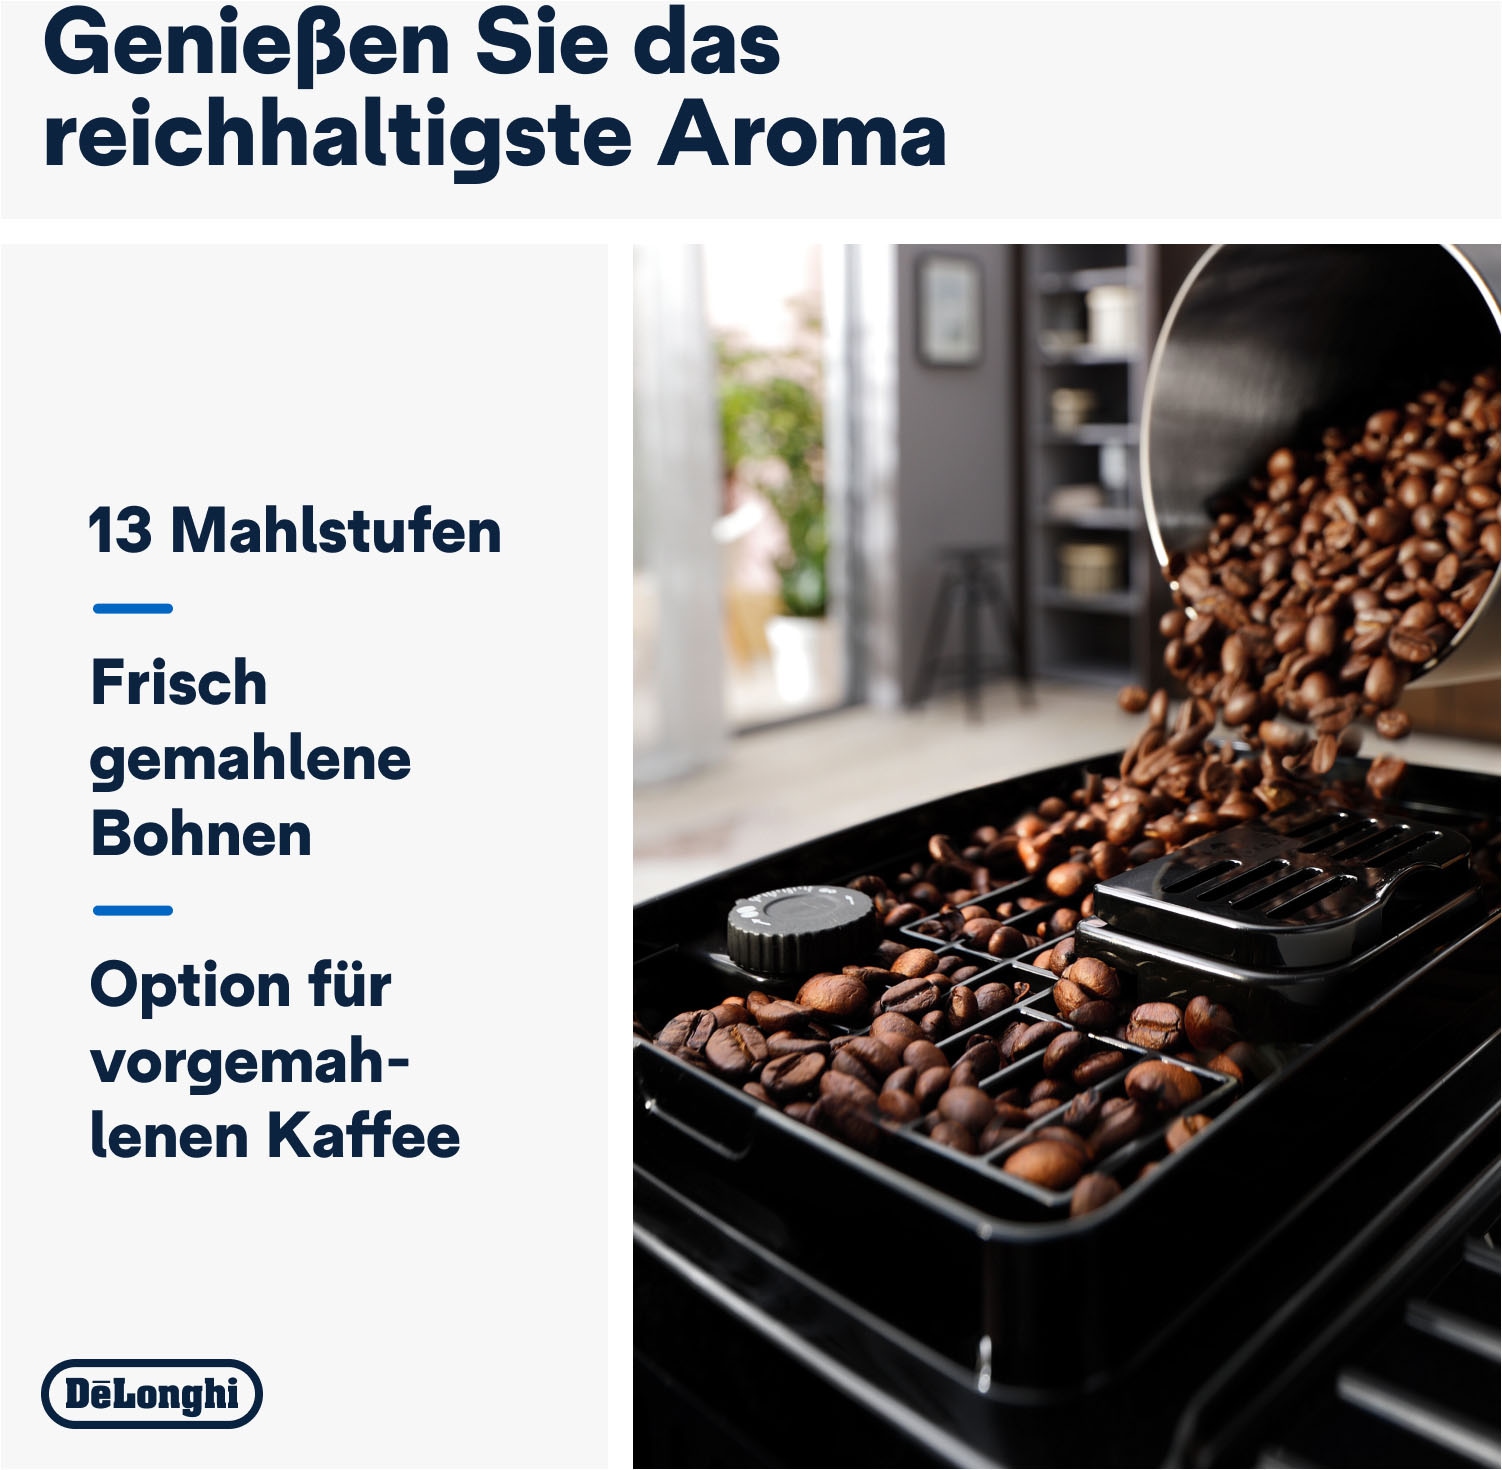 De'Longhi Kaffeevollautomat »Magnifica Start ECAM220.80.SB«, silber-schwarz